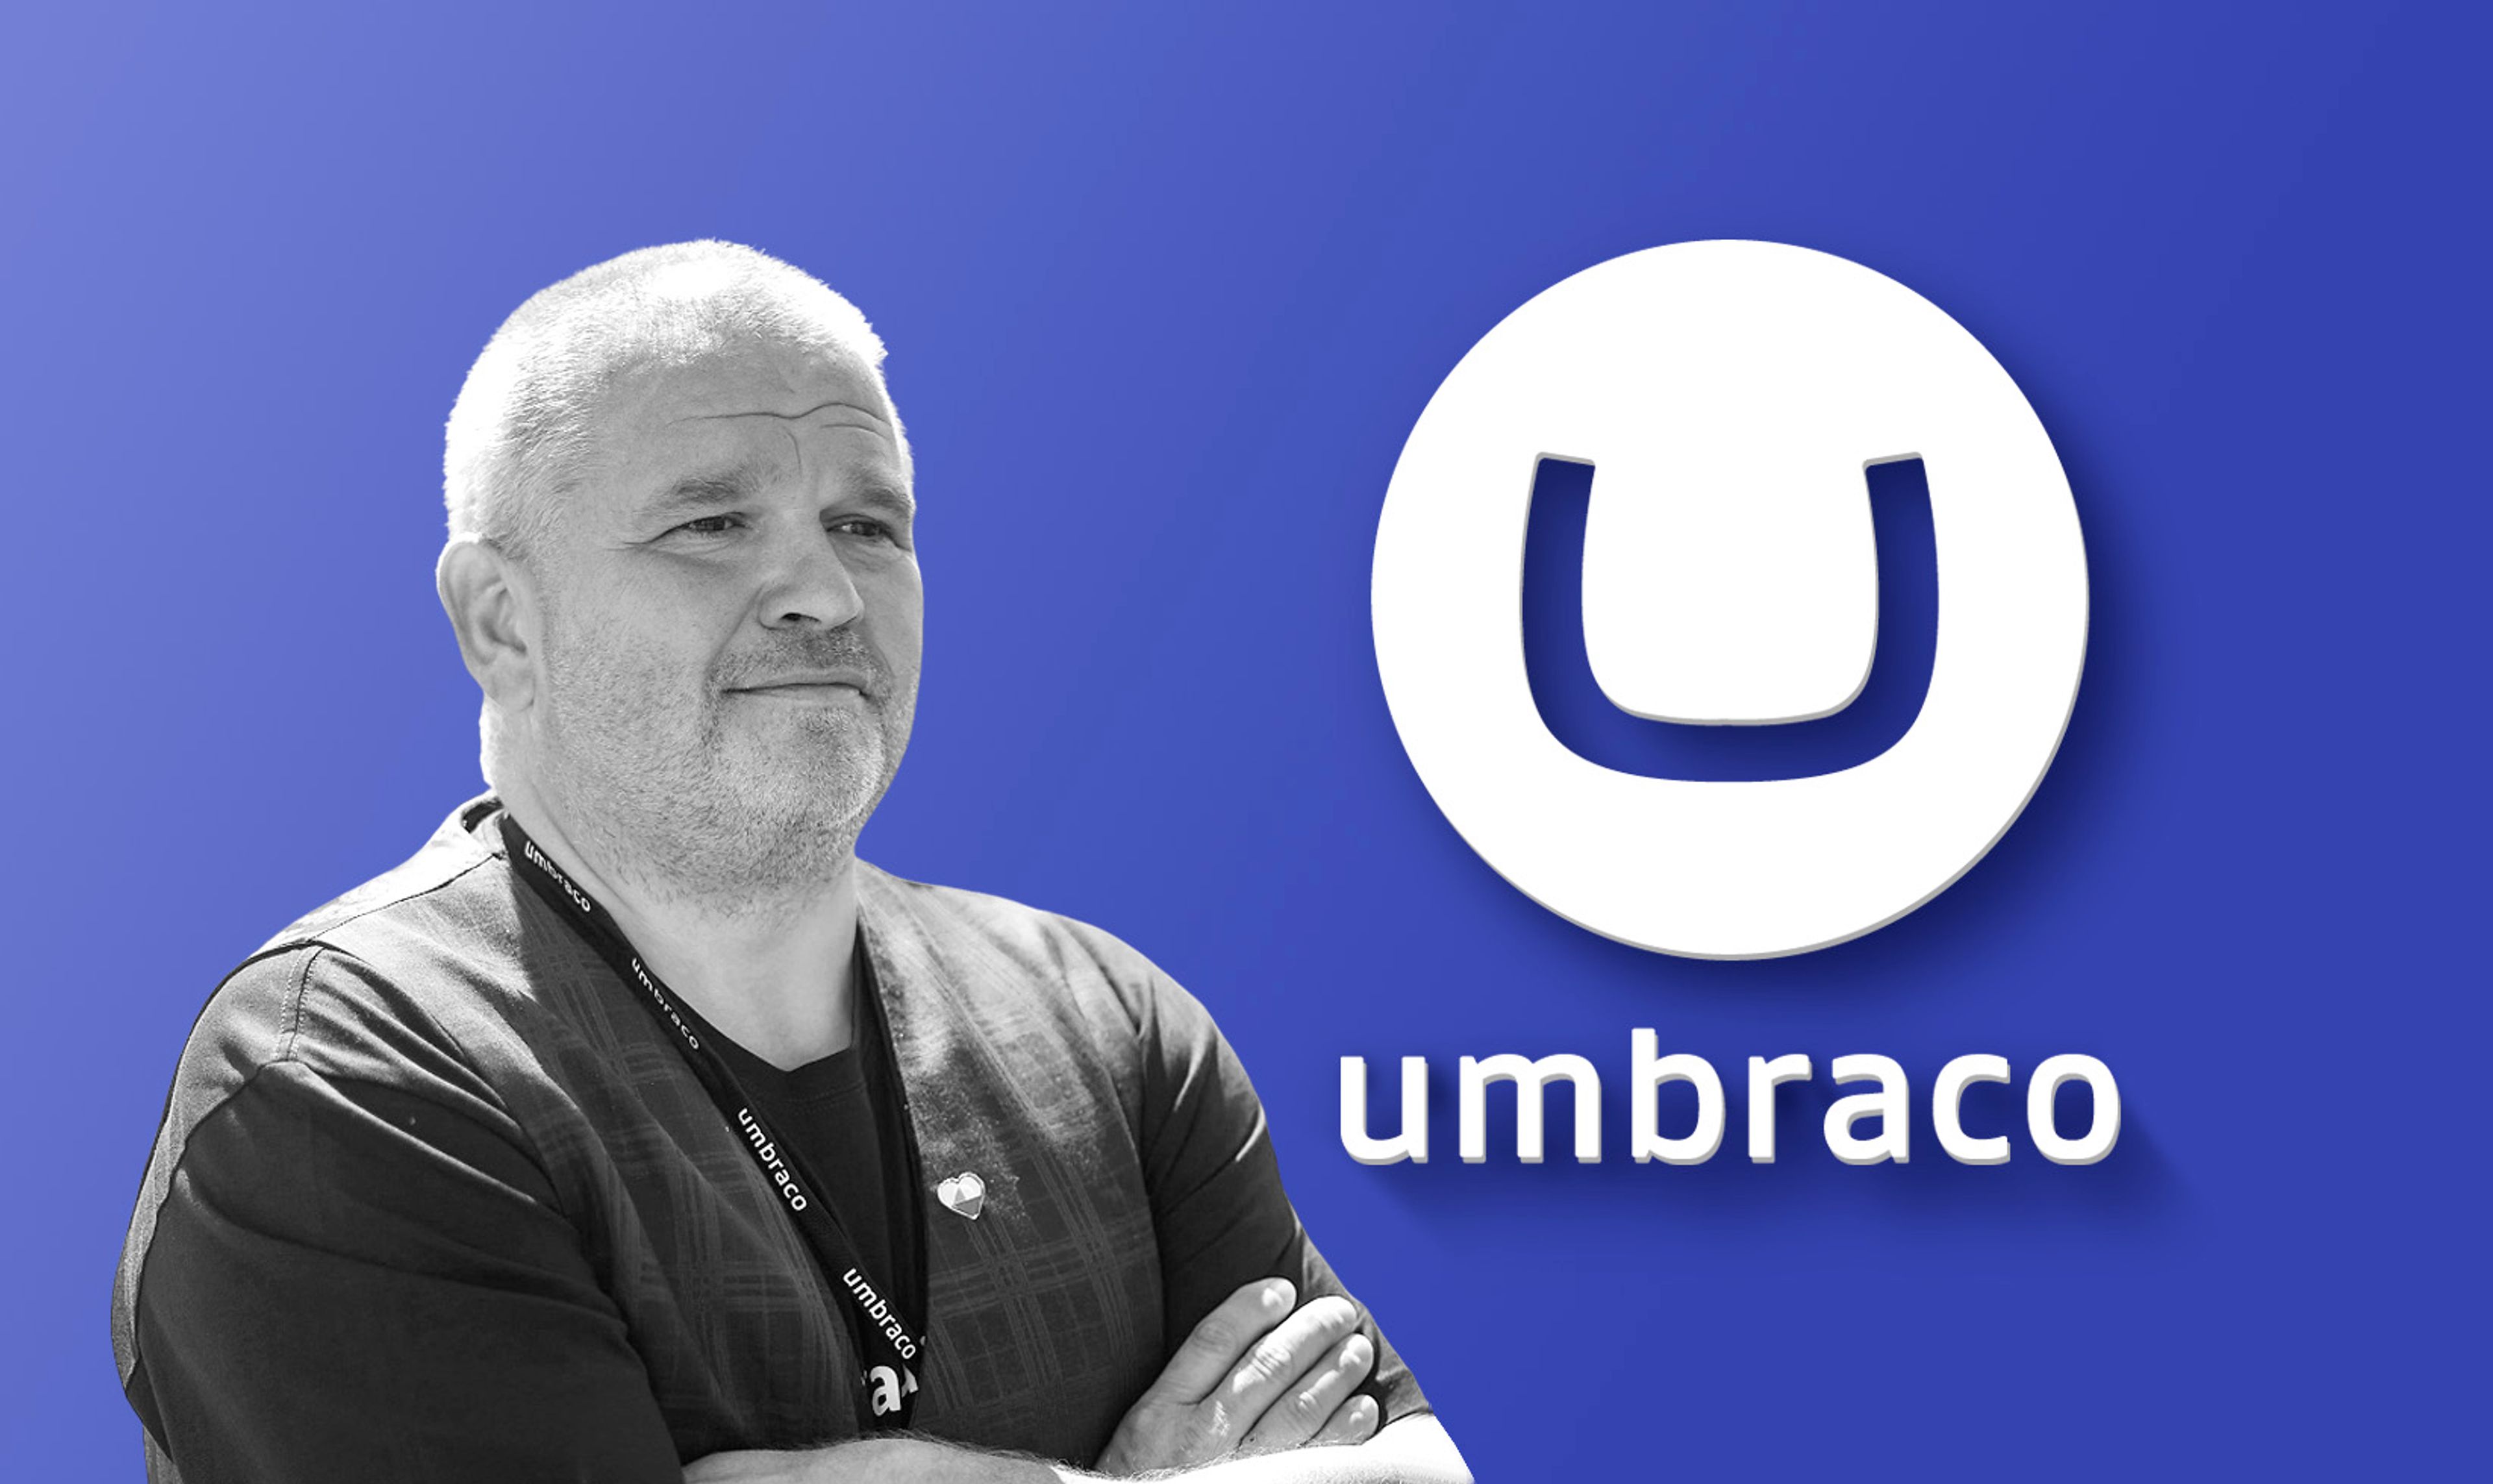 Umbraco CEO headshot and Umbraco logo